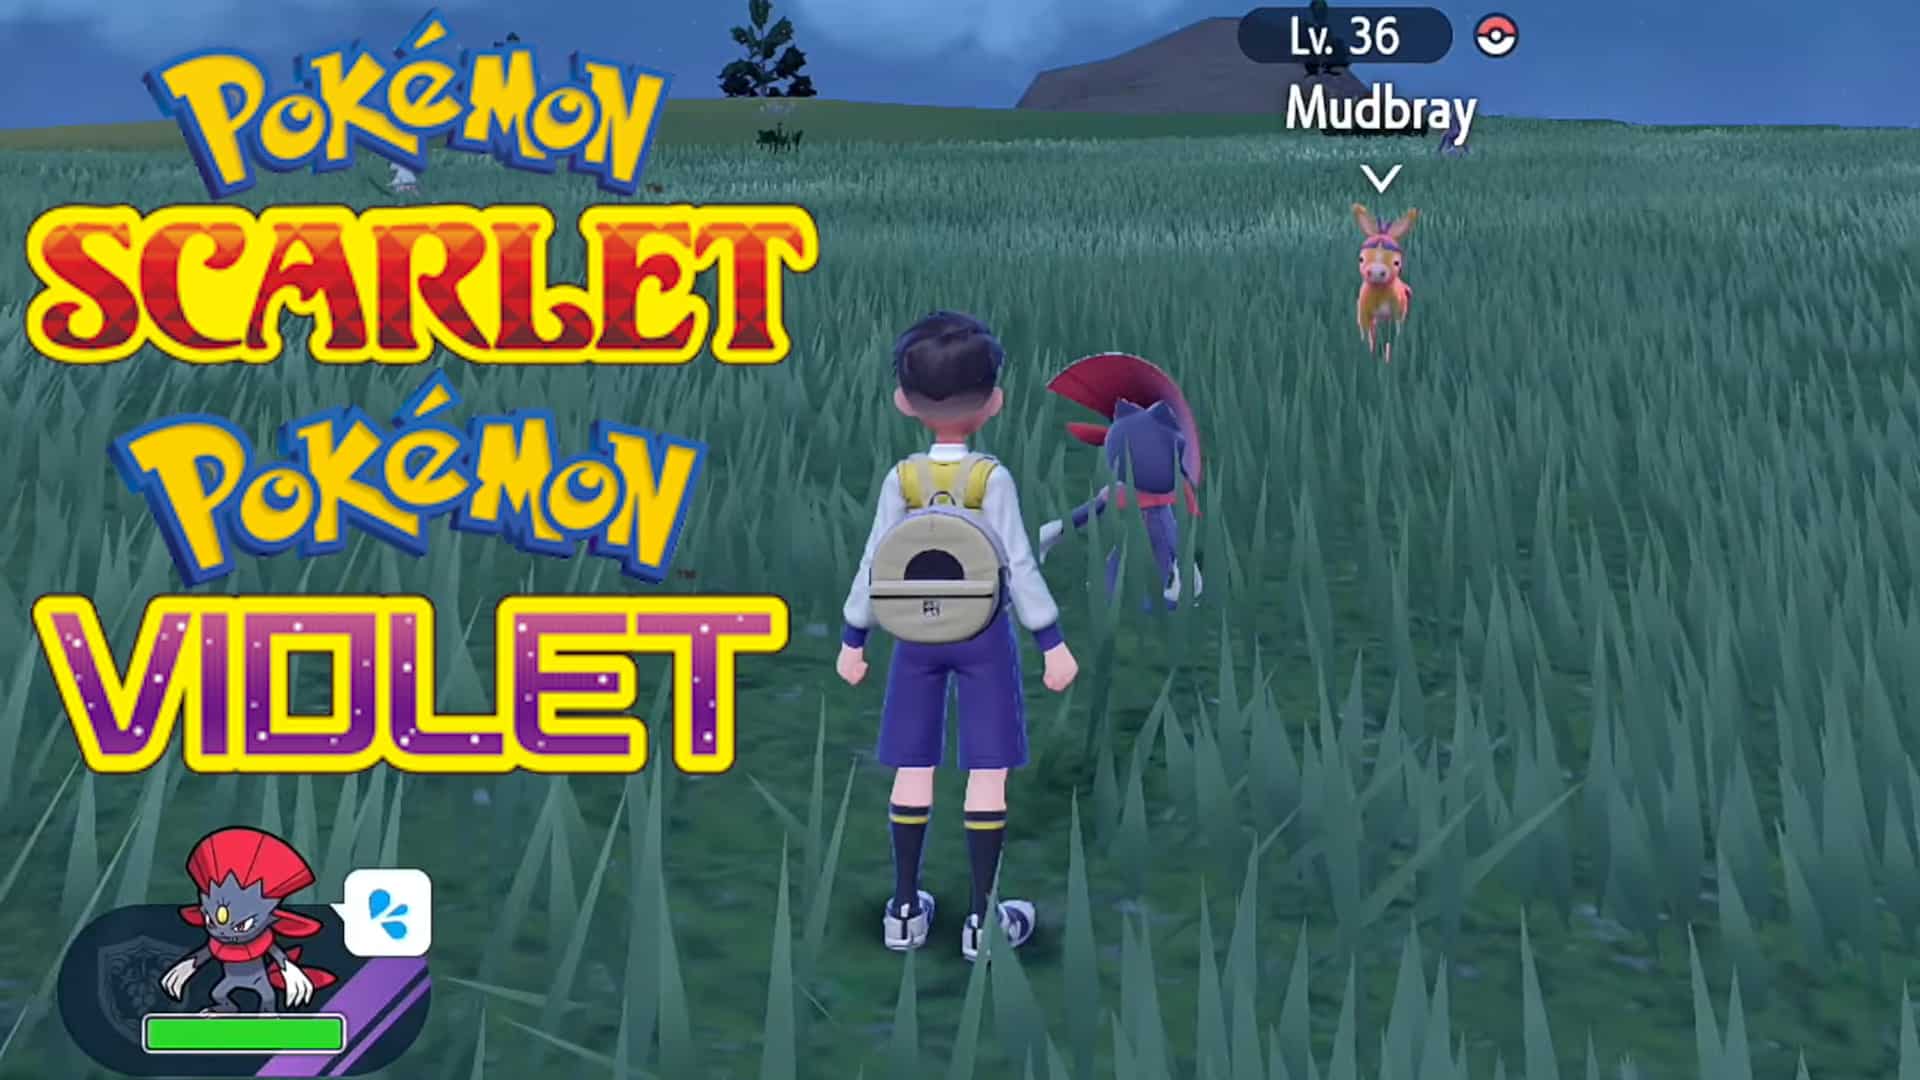 How To Find Shiny Pokemon In Pokemon Scarlet & Violet